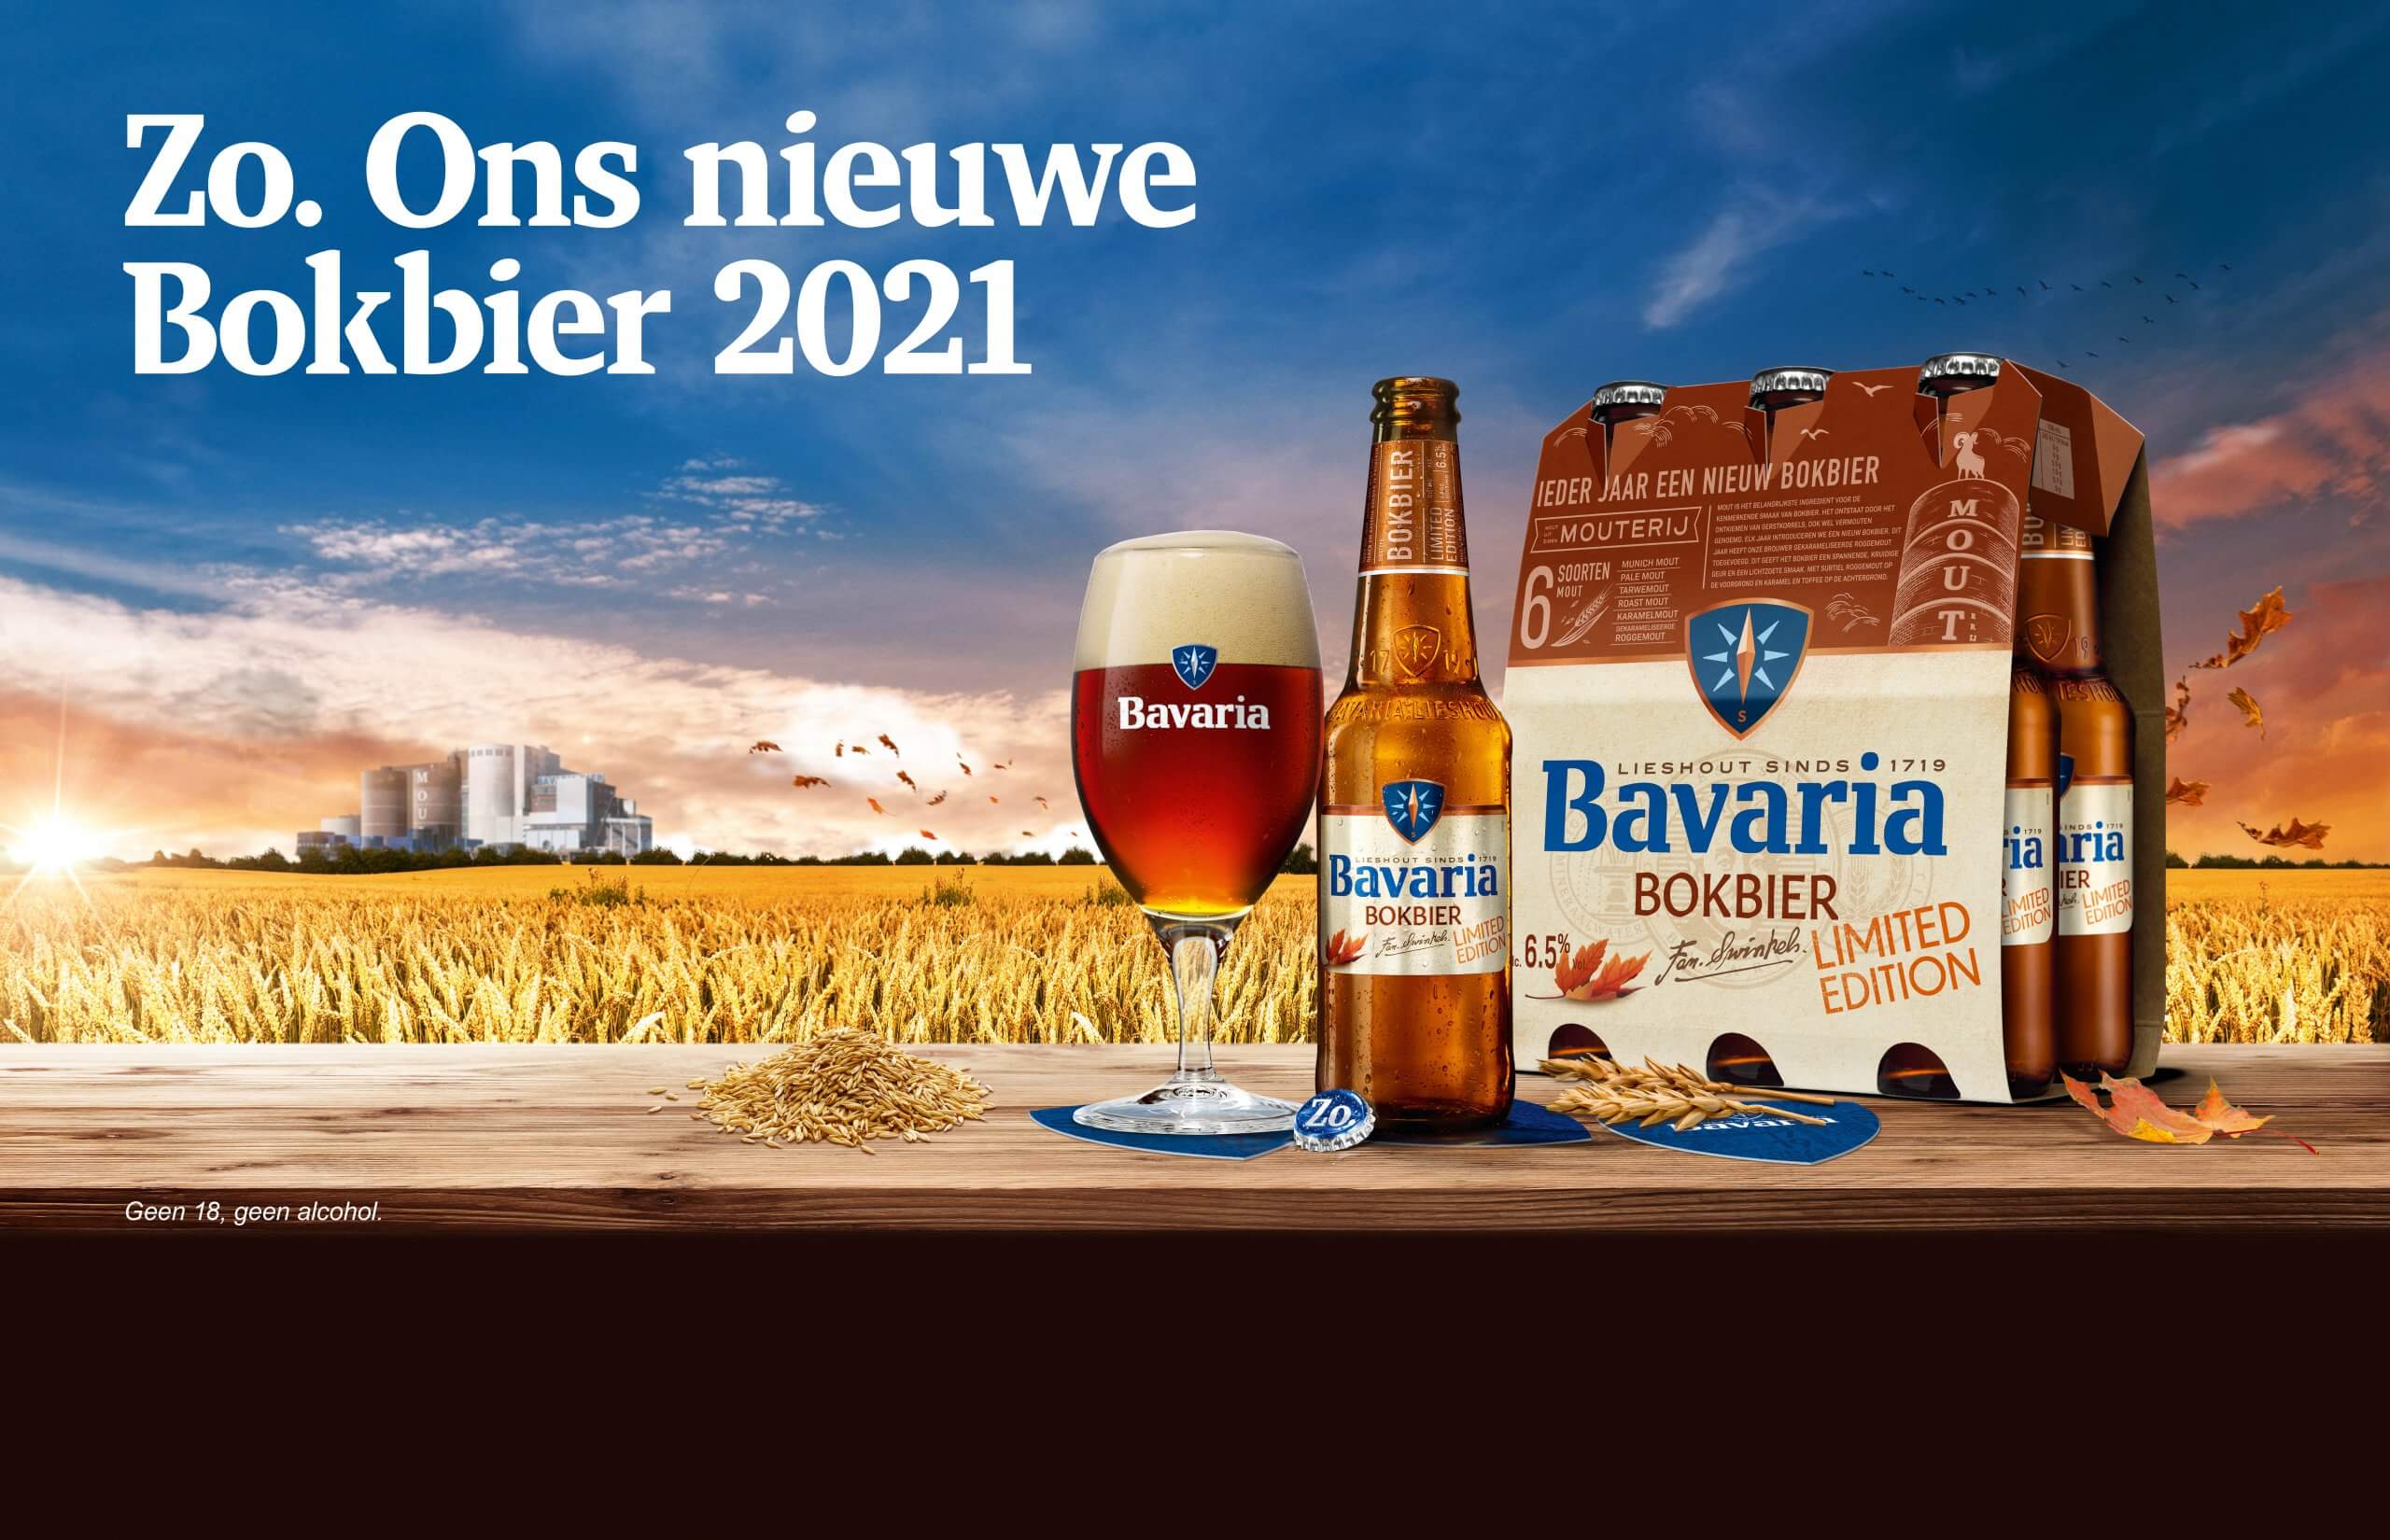 Herfstbok 2021 met van roggemout - Bier! magazine | Magazine over